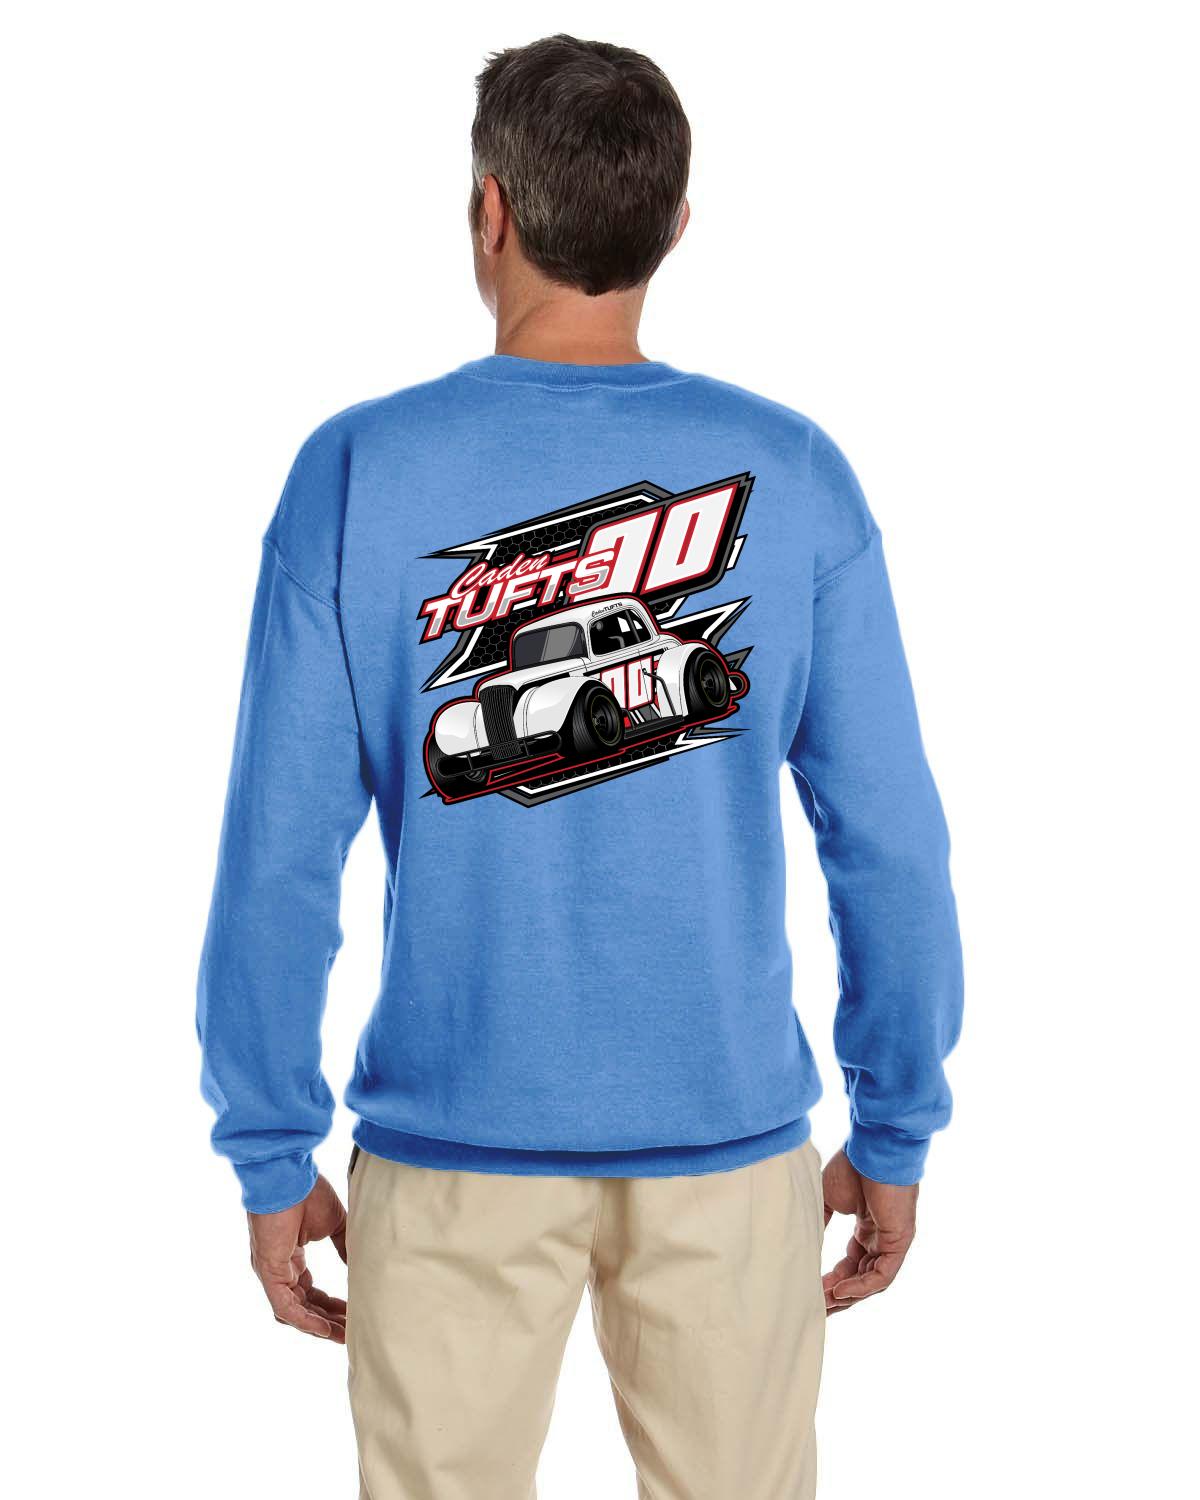 Caden Tufts Legends Racing Adult Crew Neck sweater